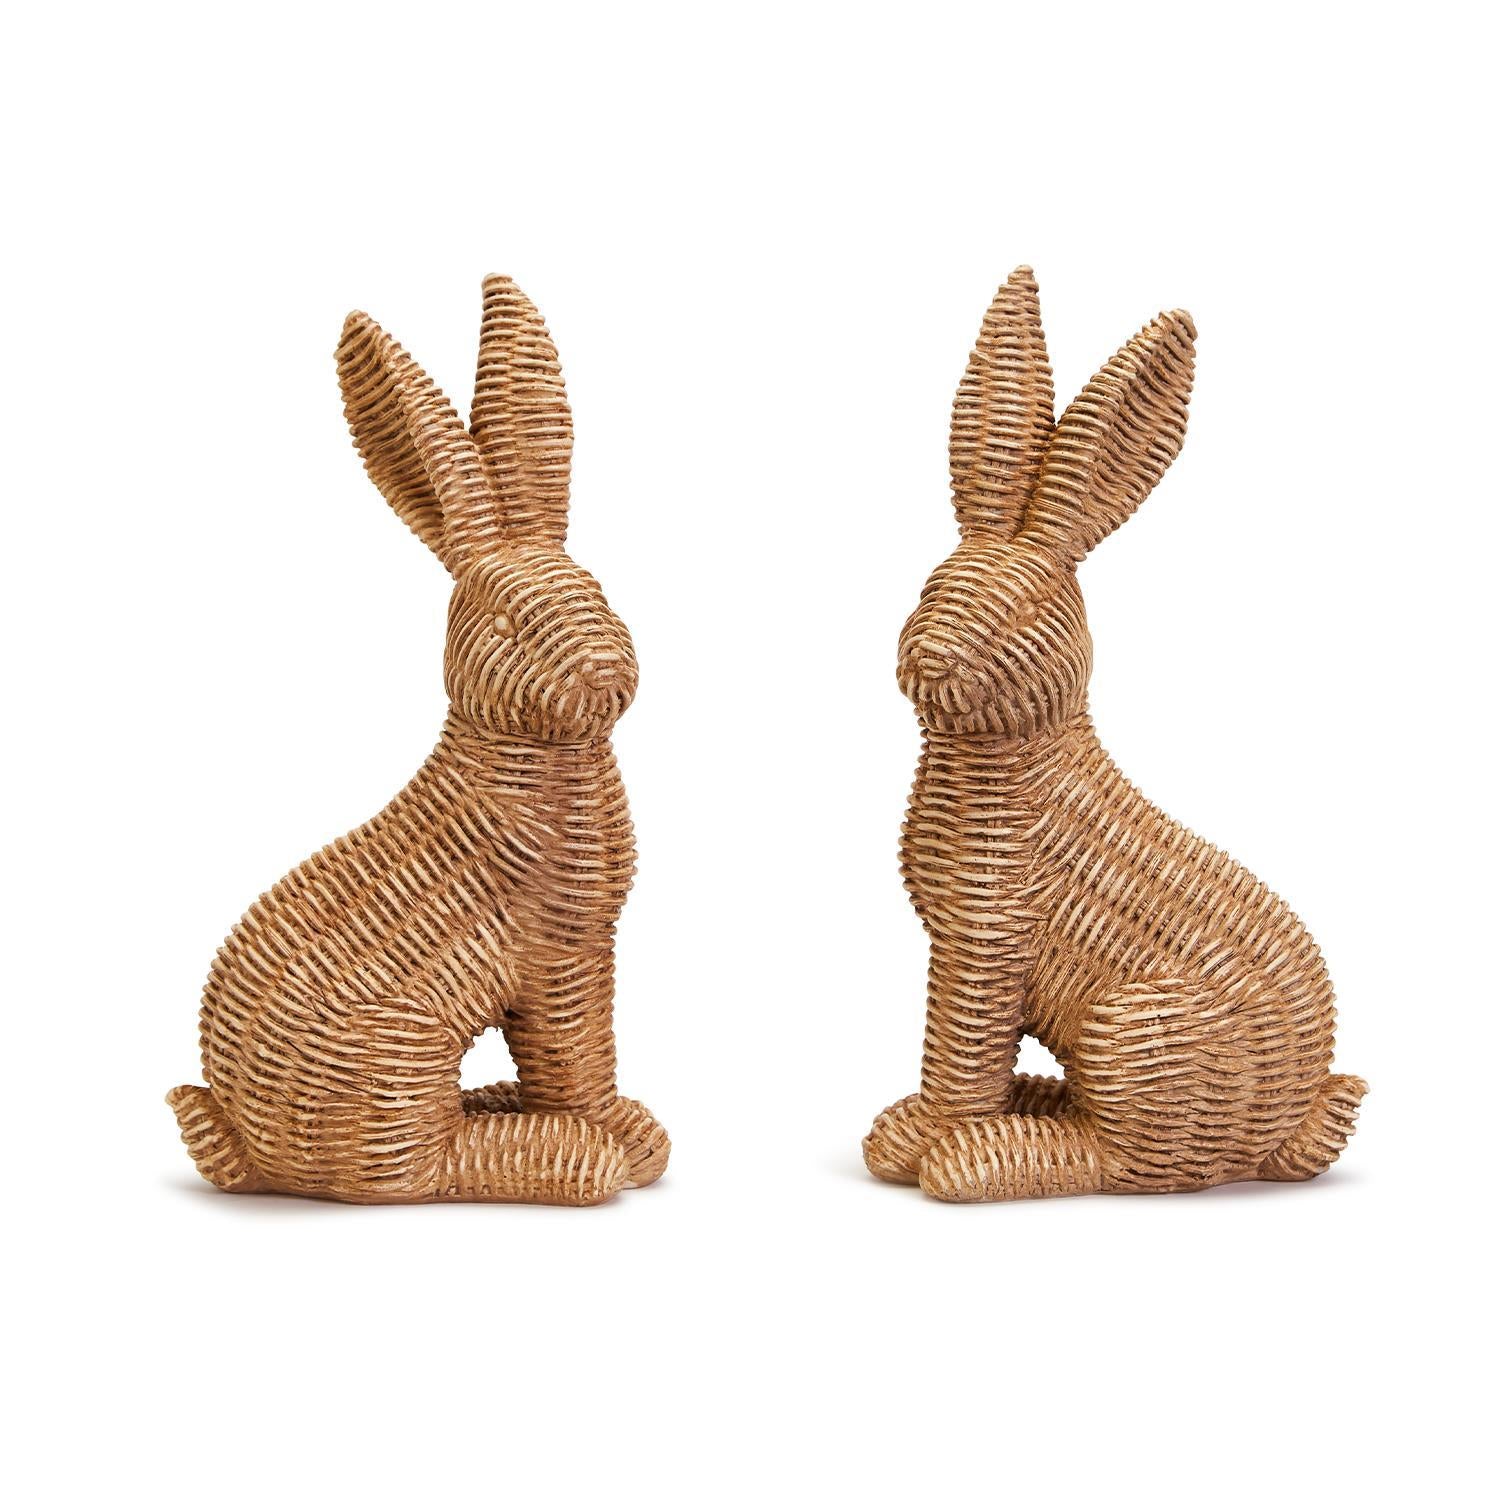 Weave an Oak Basket in 3 Hours at White Rabbit Fine Art Gallery